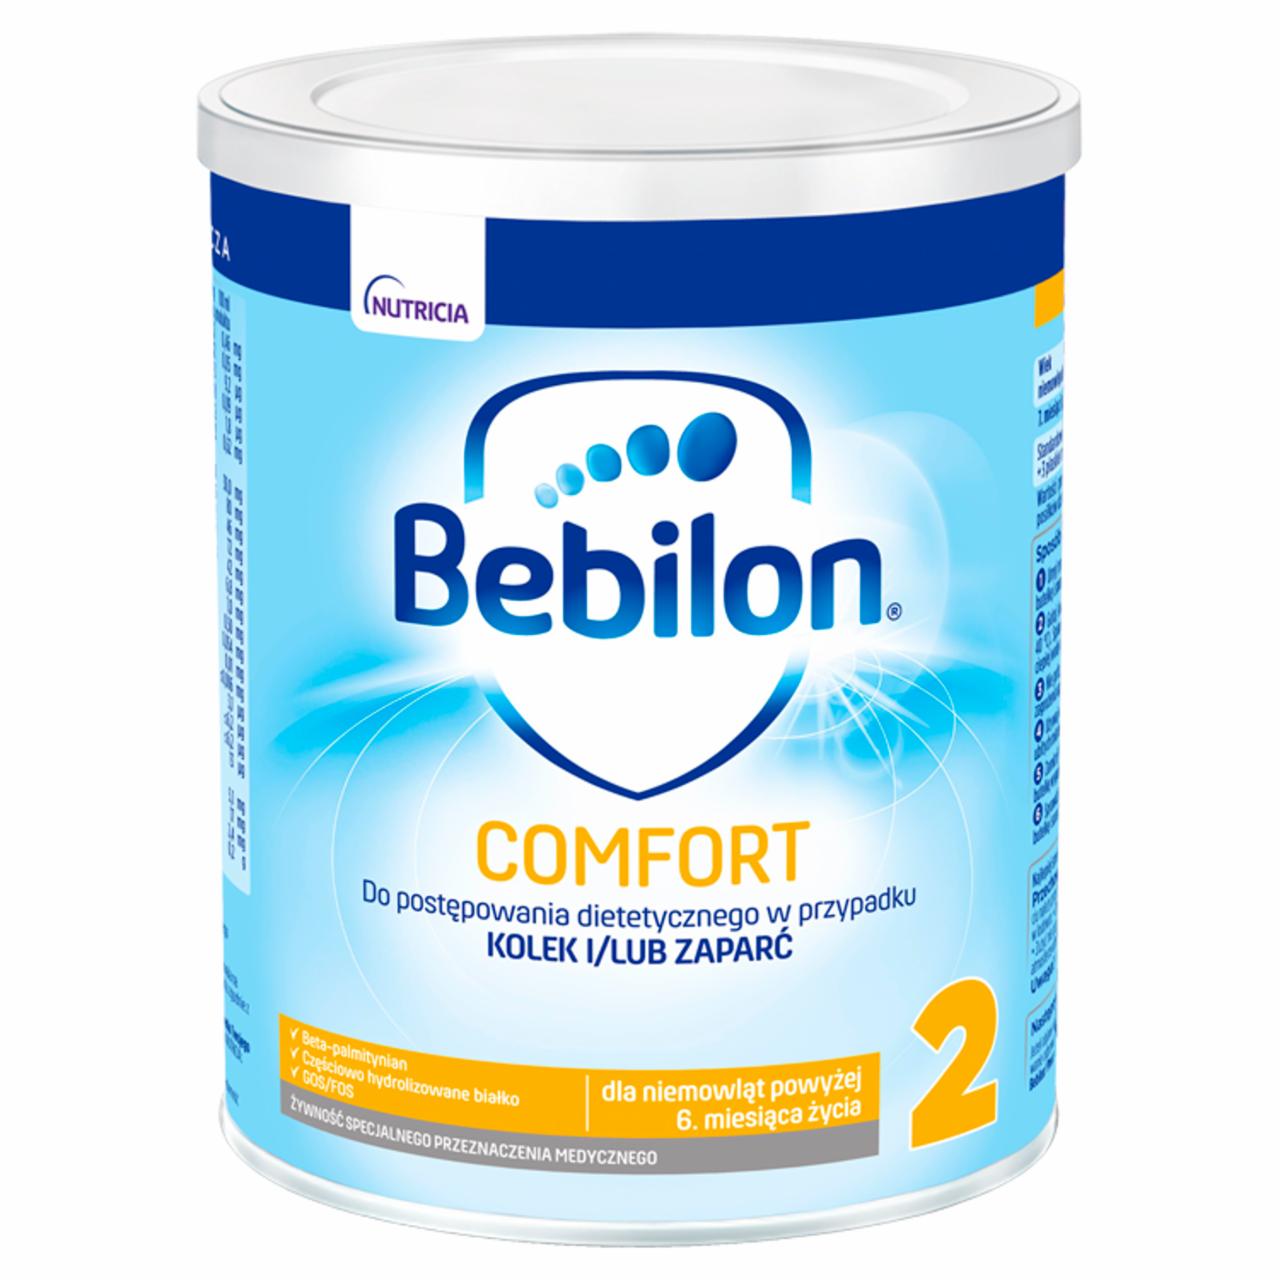 Zdjęcia - Bebilon Comfort 2 Żywność specjalnego przeznaczenia medycznego dla niemowląt od 6. miesiąca 400 g